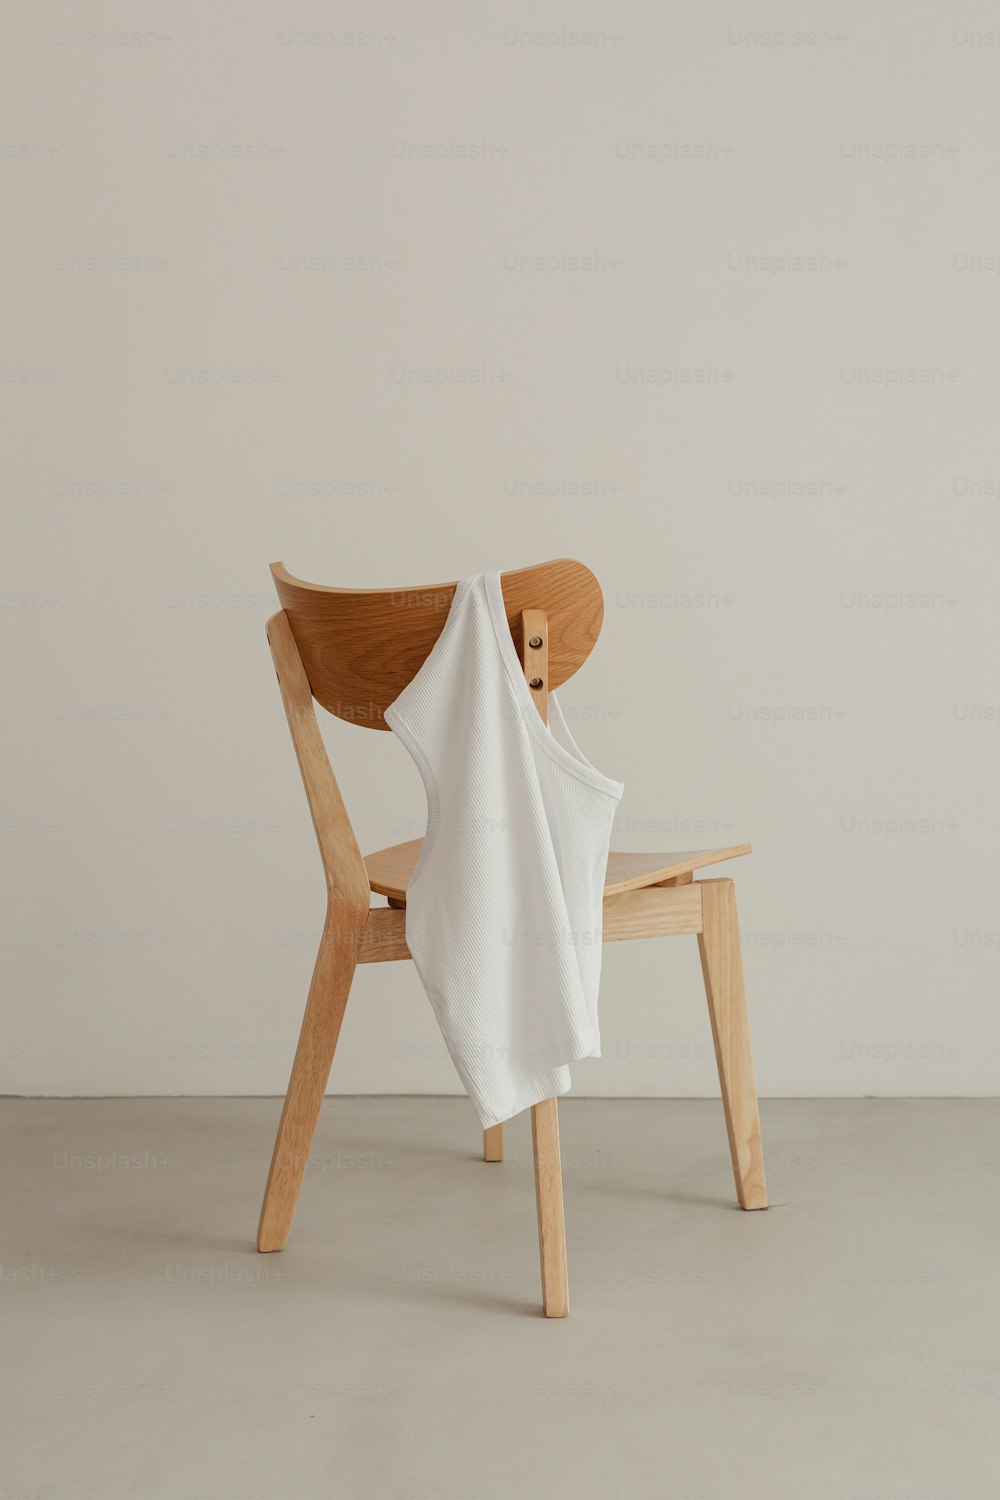 흰 천을 씌운 나무 의자